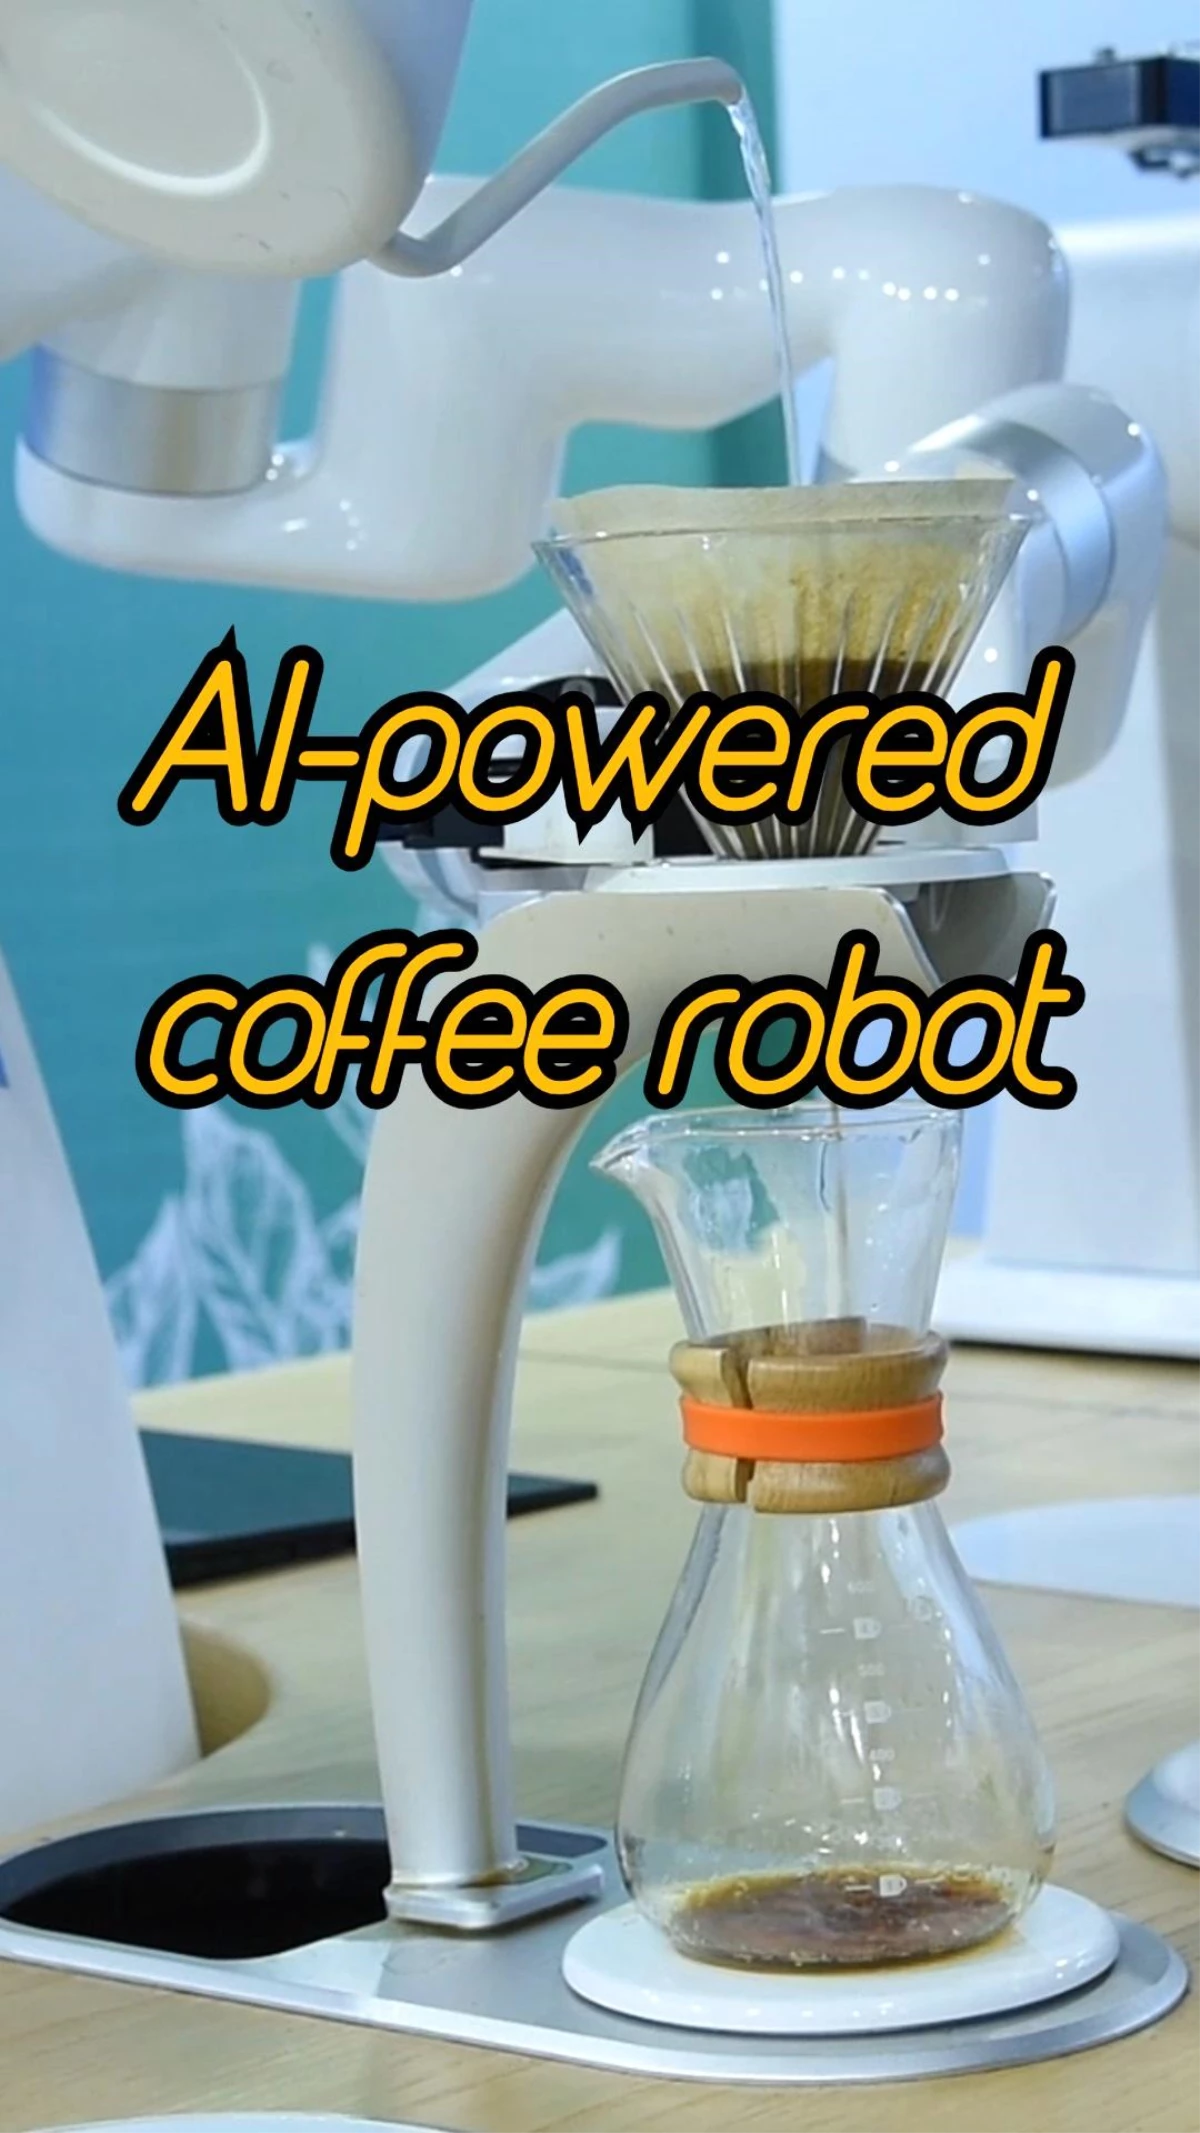 Kahve yapan robotun çeşitli görüntüleri